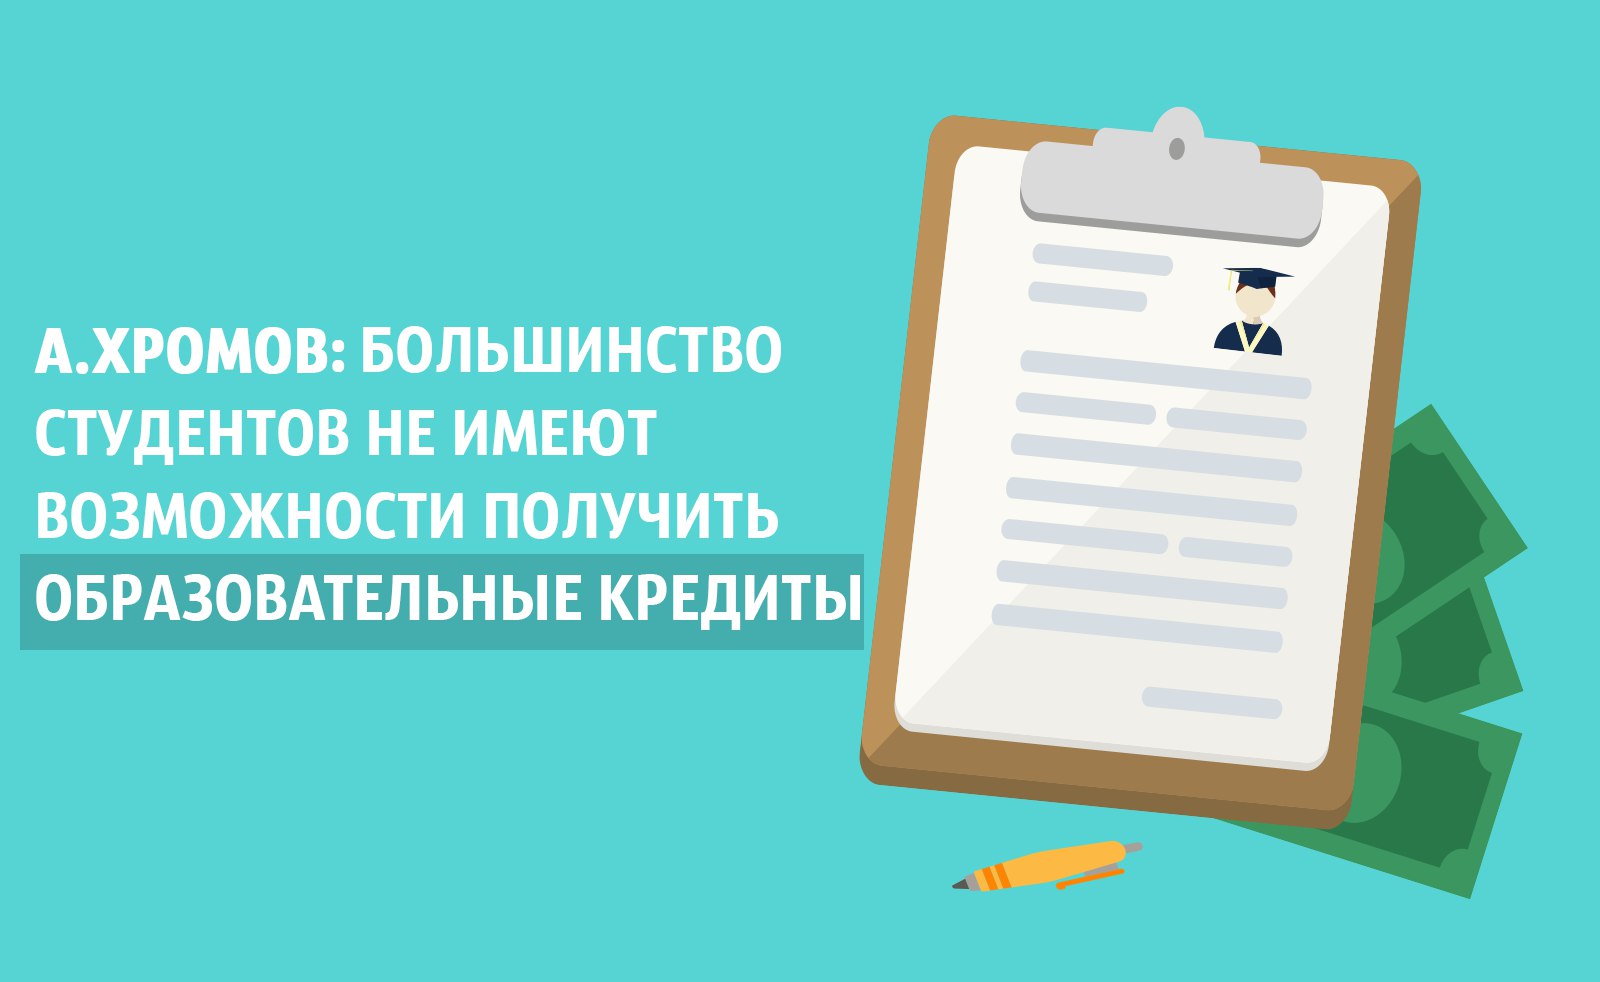 Студенческий омбудсмен просит Правительство России способствовать доступности образовательных кредитов